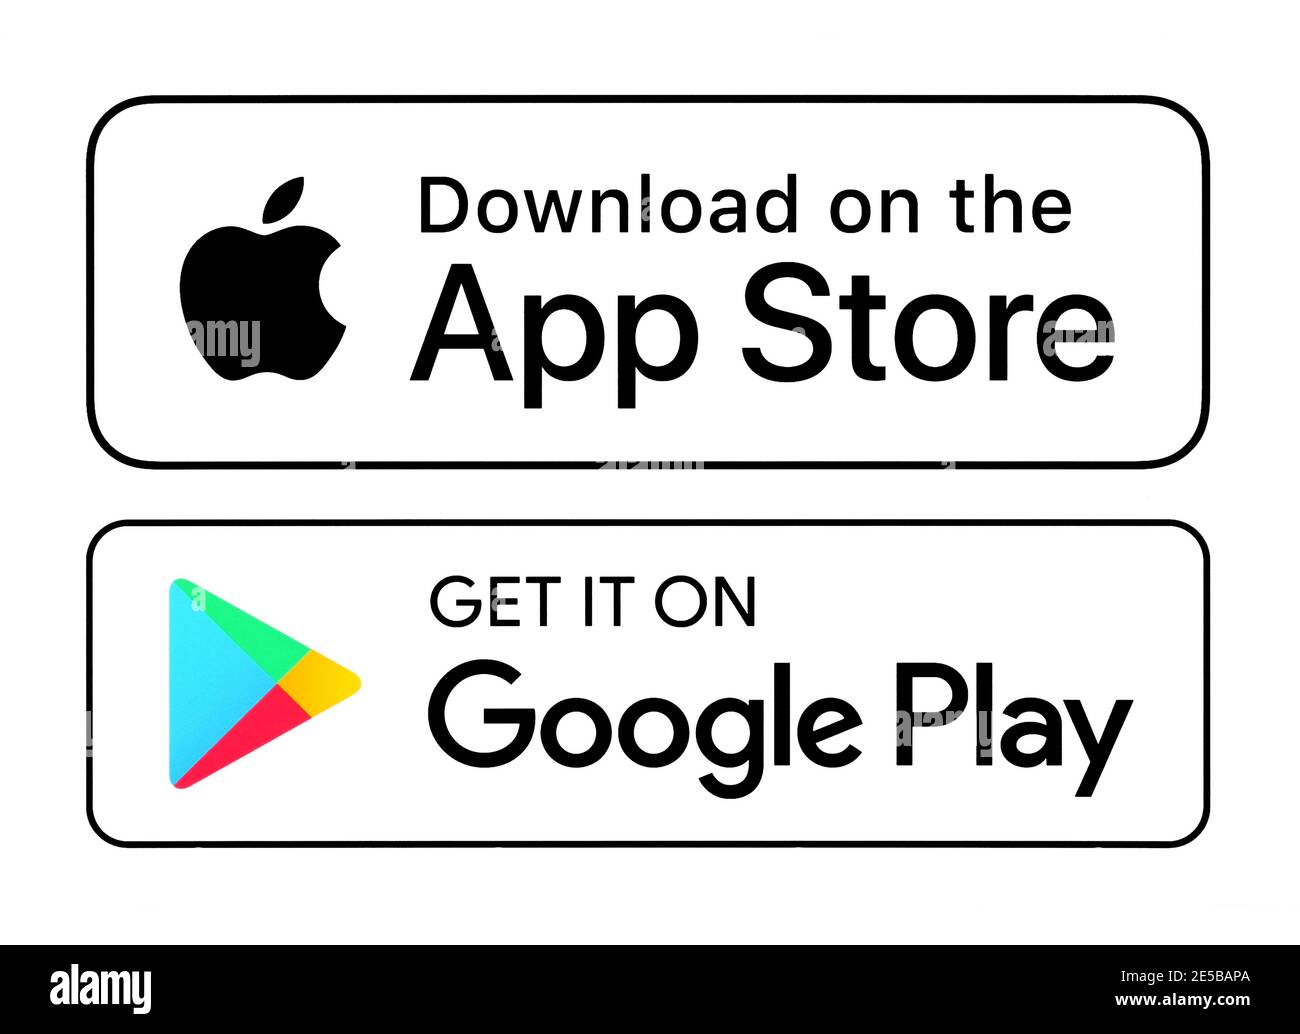 Kiev, Ukraine - 20 octobre 2020: Télécharger sur l'App Store et l'obtenir sur Google Play icônes de bouton blanc, imprimé sur papier Banque D'Images